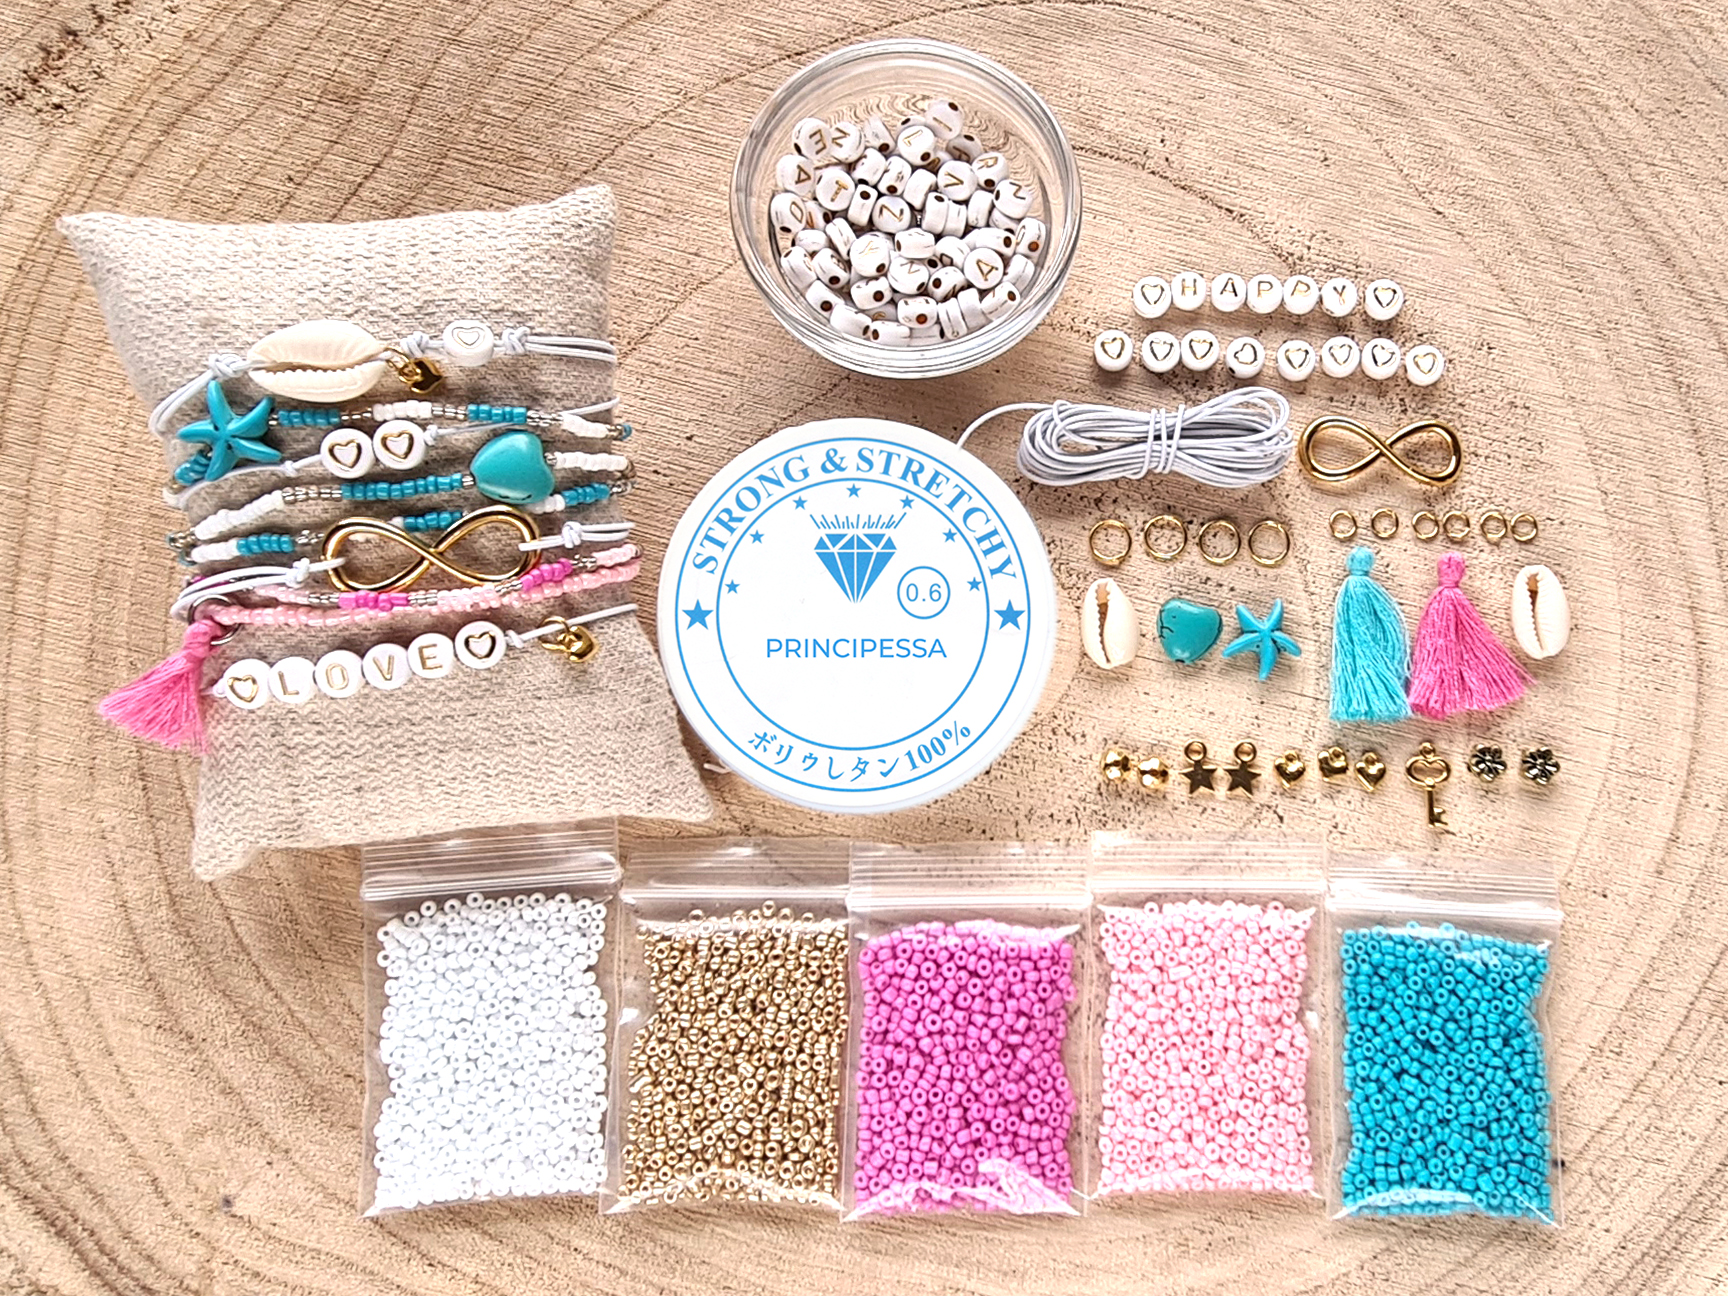 Watt pik Actief DIY startpakket armbandjes – 2mm kraal met letterkralen, connector en gekleurd  elastiek – Goud, roze, turquoise – Principessa shop